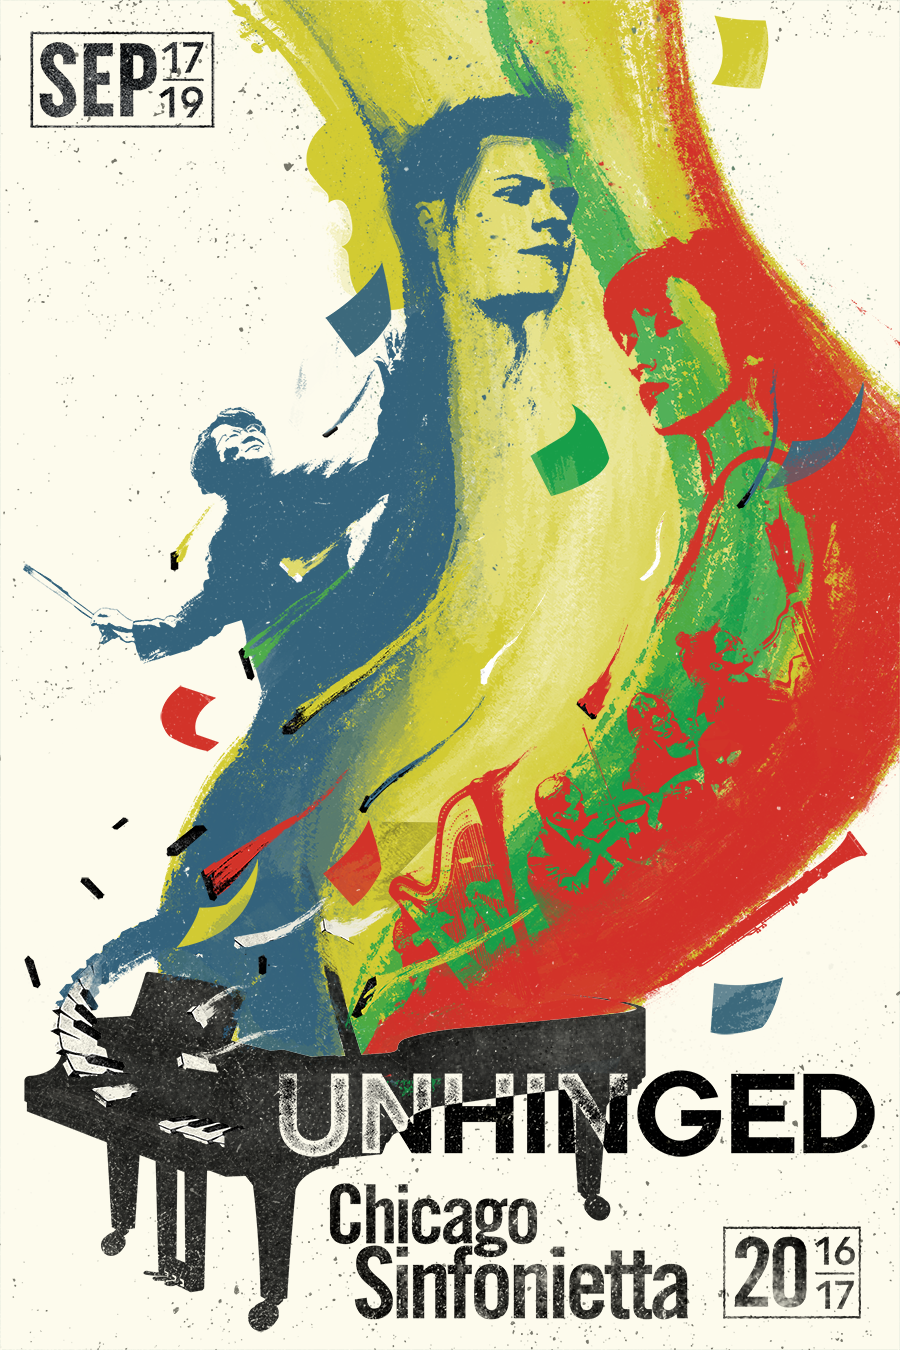 Unhinged - Chicago Sinfonietta